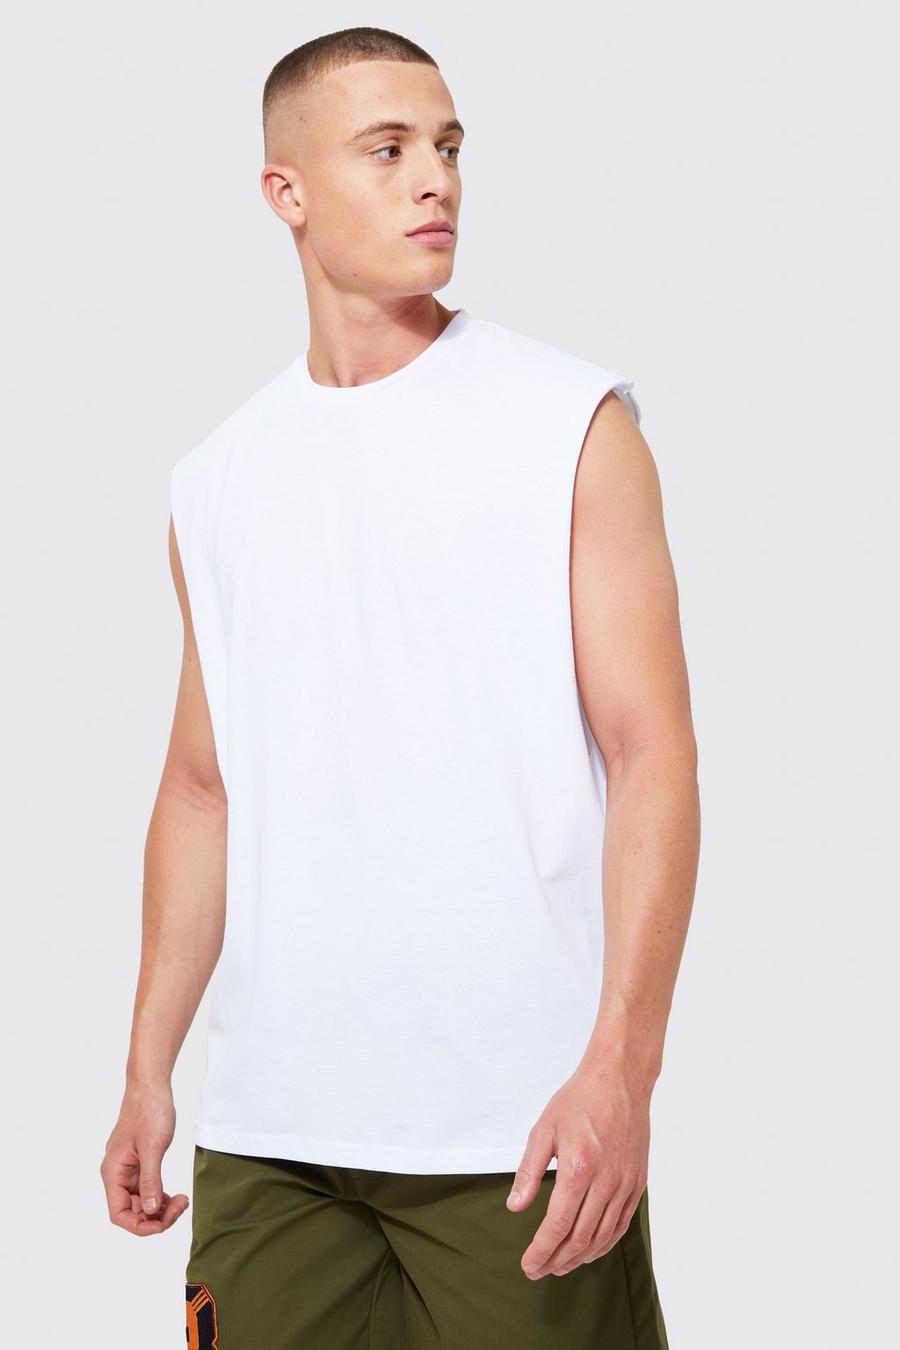 Camisetas tirantes de hombre & Tops sin mangas | Verano, lisos & estampados | boohoo ES